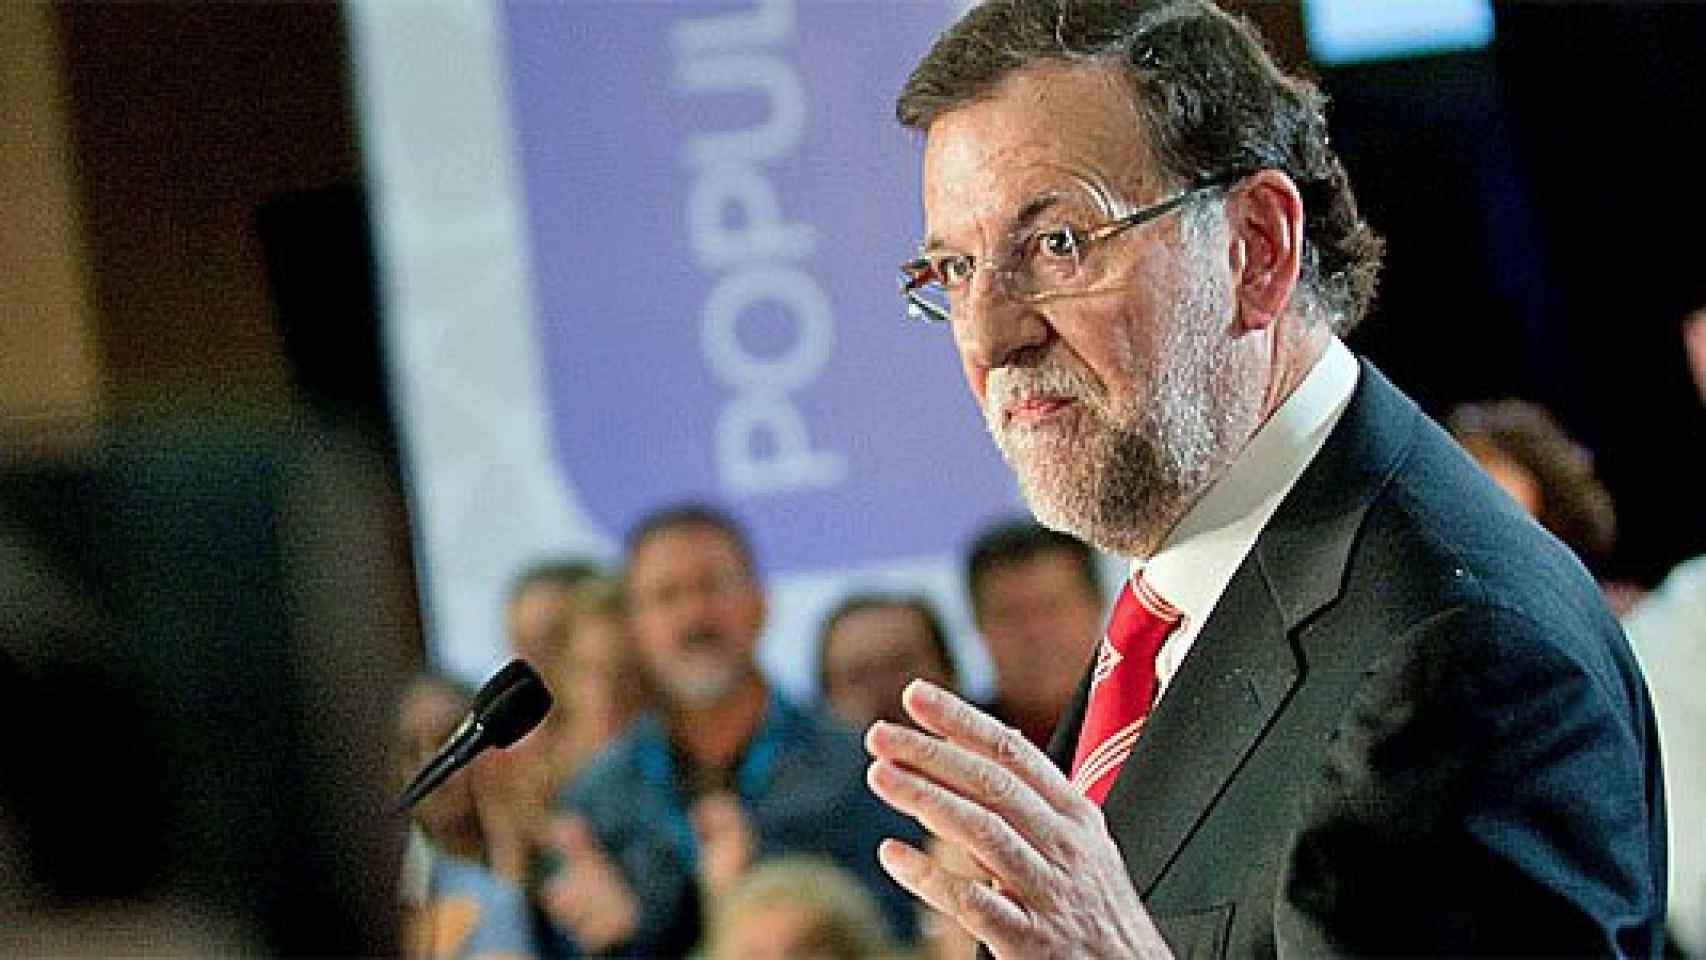 El presidente del Gobierno, Mariano Rajoy, en Barcelona